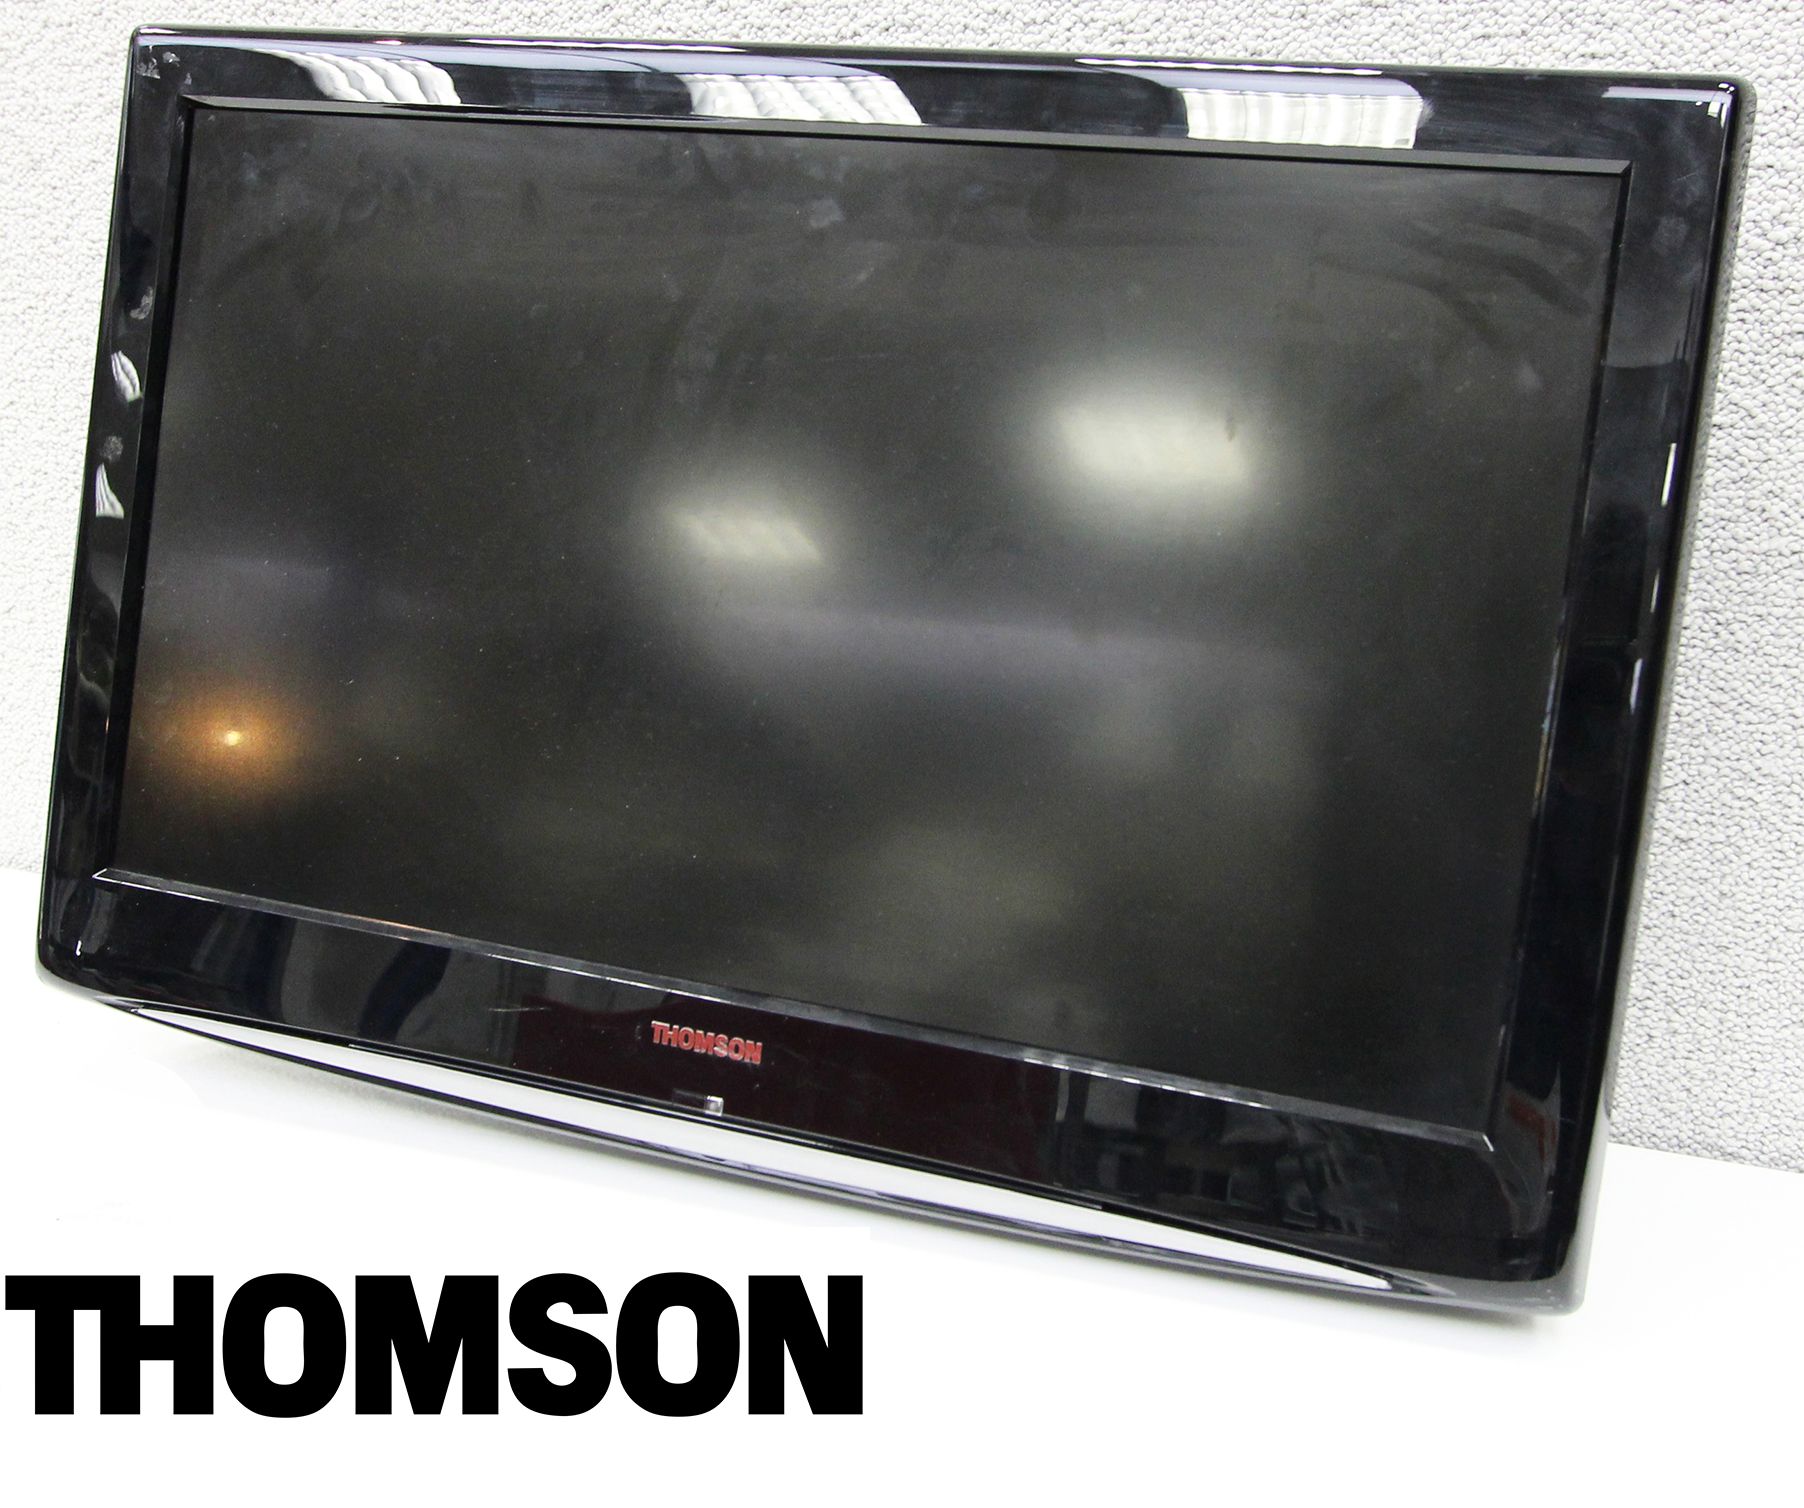 TELEVISEUR DE MARQUE THOMSON. ECRAN LCD DE 32 POUCES. 1 UNITE.